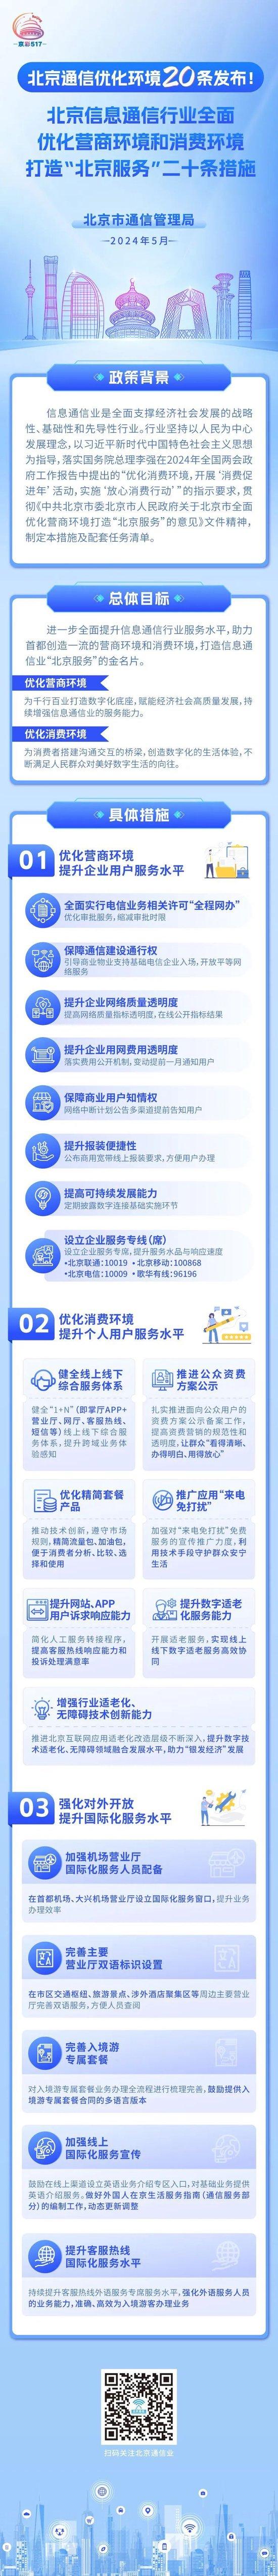 京彩517·三十向新 | 北京信息通信优化营商环境和消费环境20条全文解读一起看！